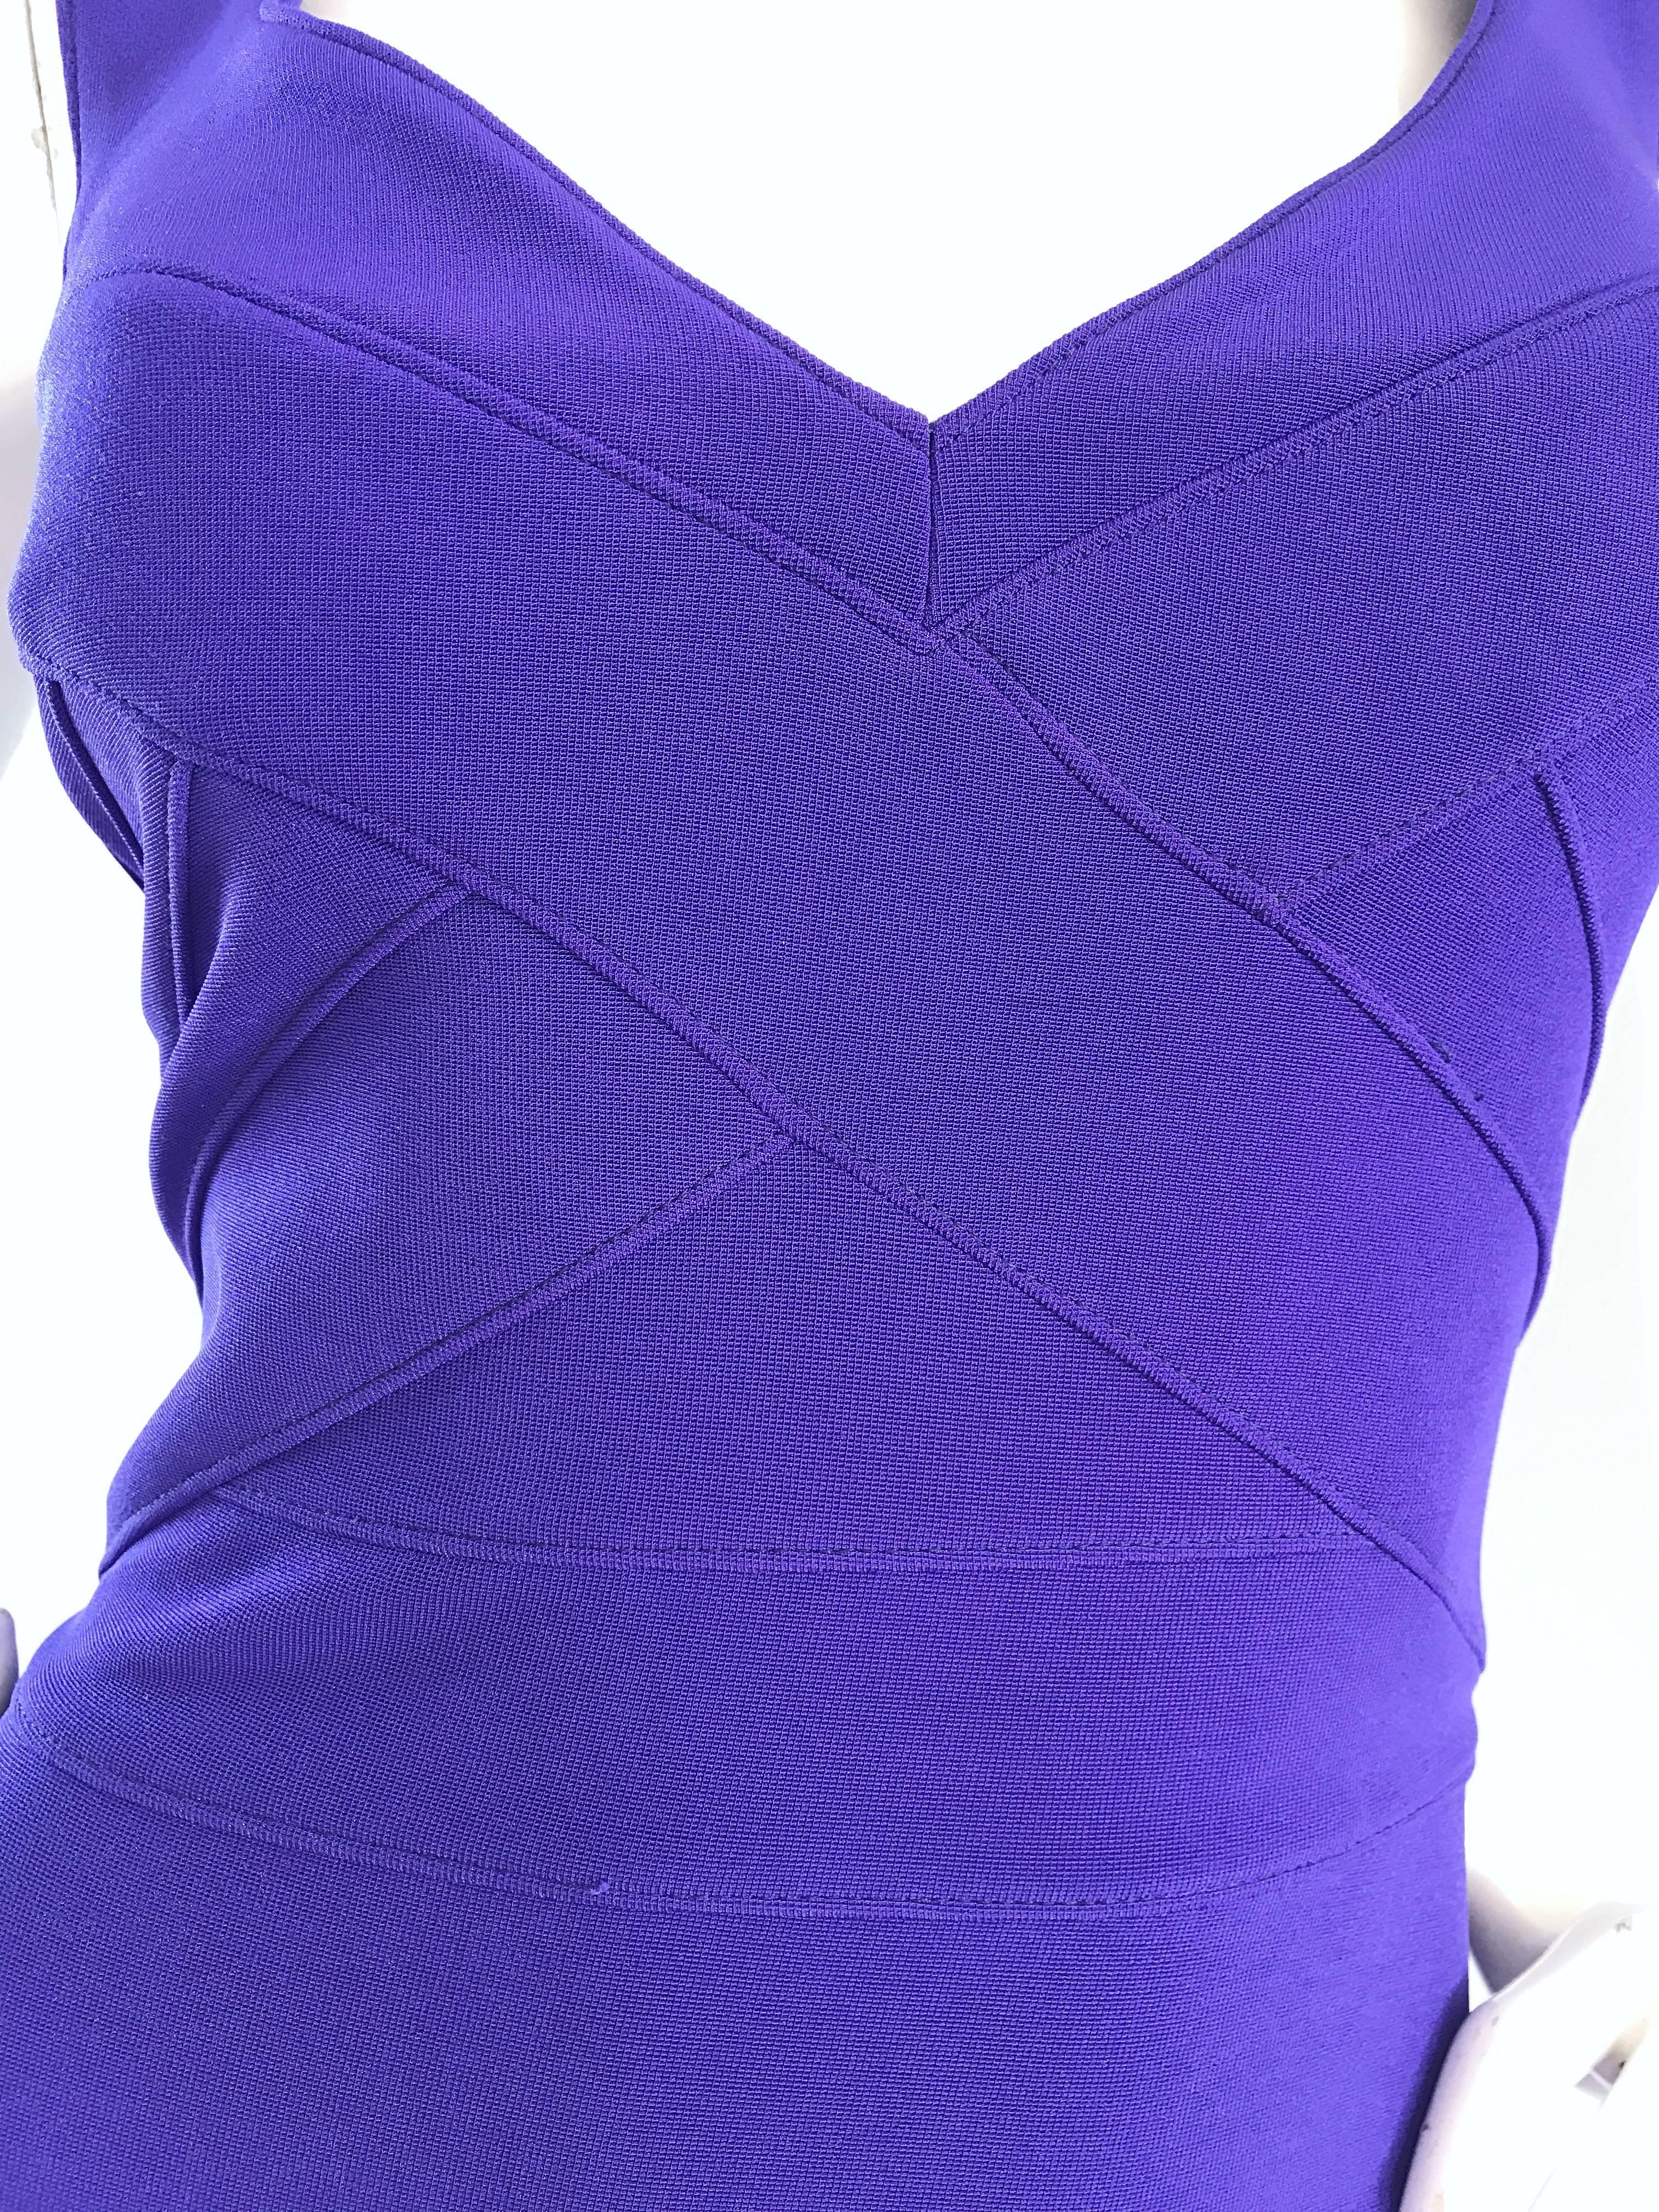 Violet Tadashi Shoji pour I Magnin - Robe moulante et sexy à bandes, violette, vintage, état neuf avec étiquettes, années 1990 en vente